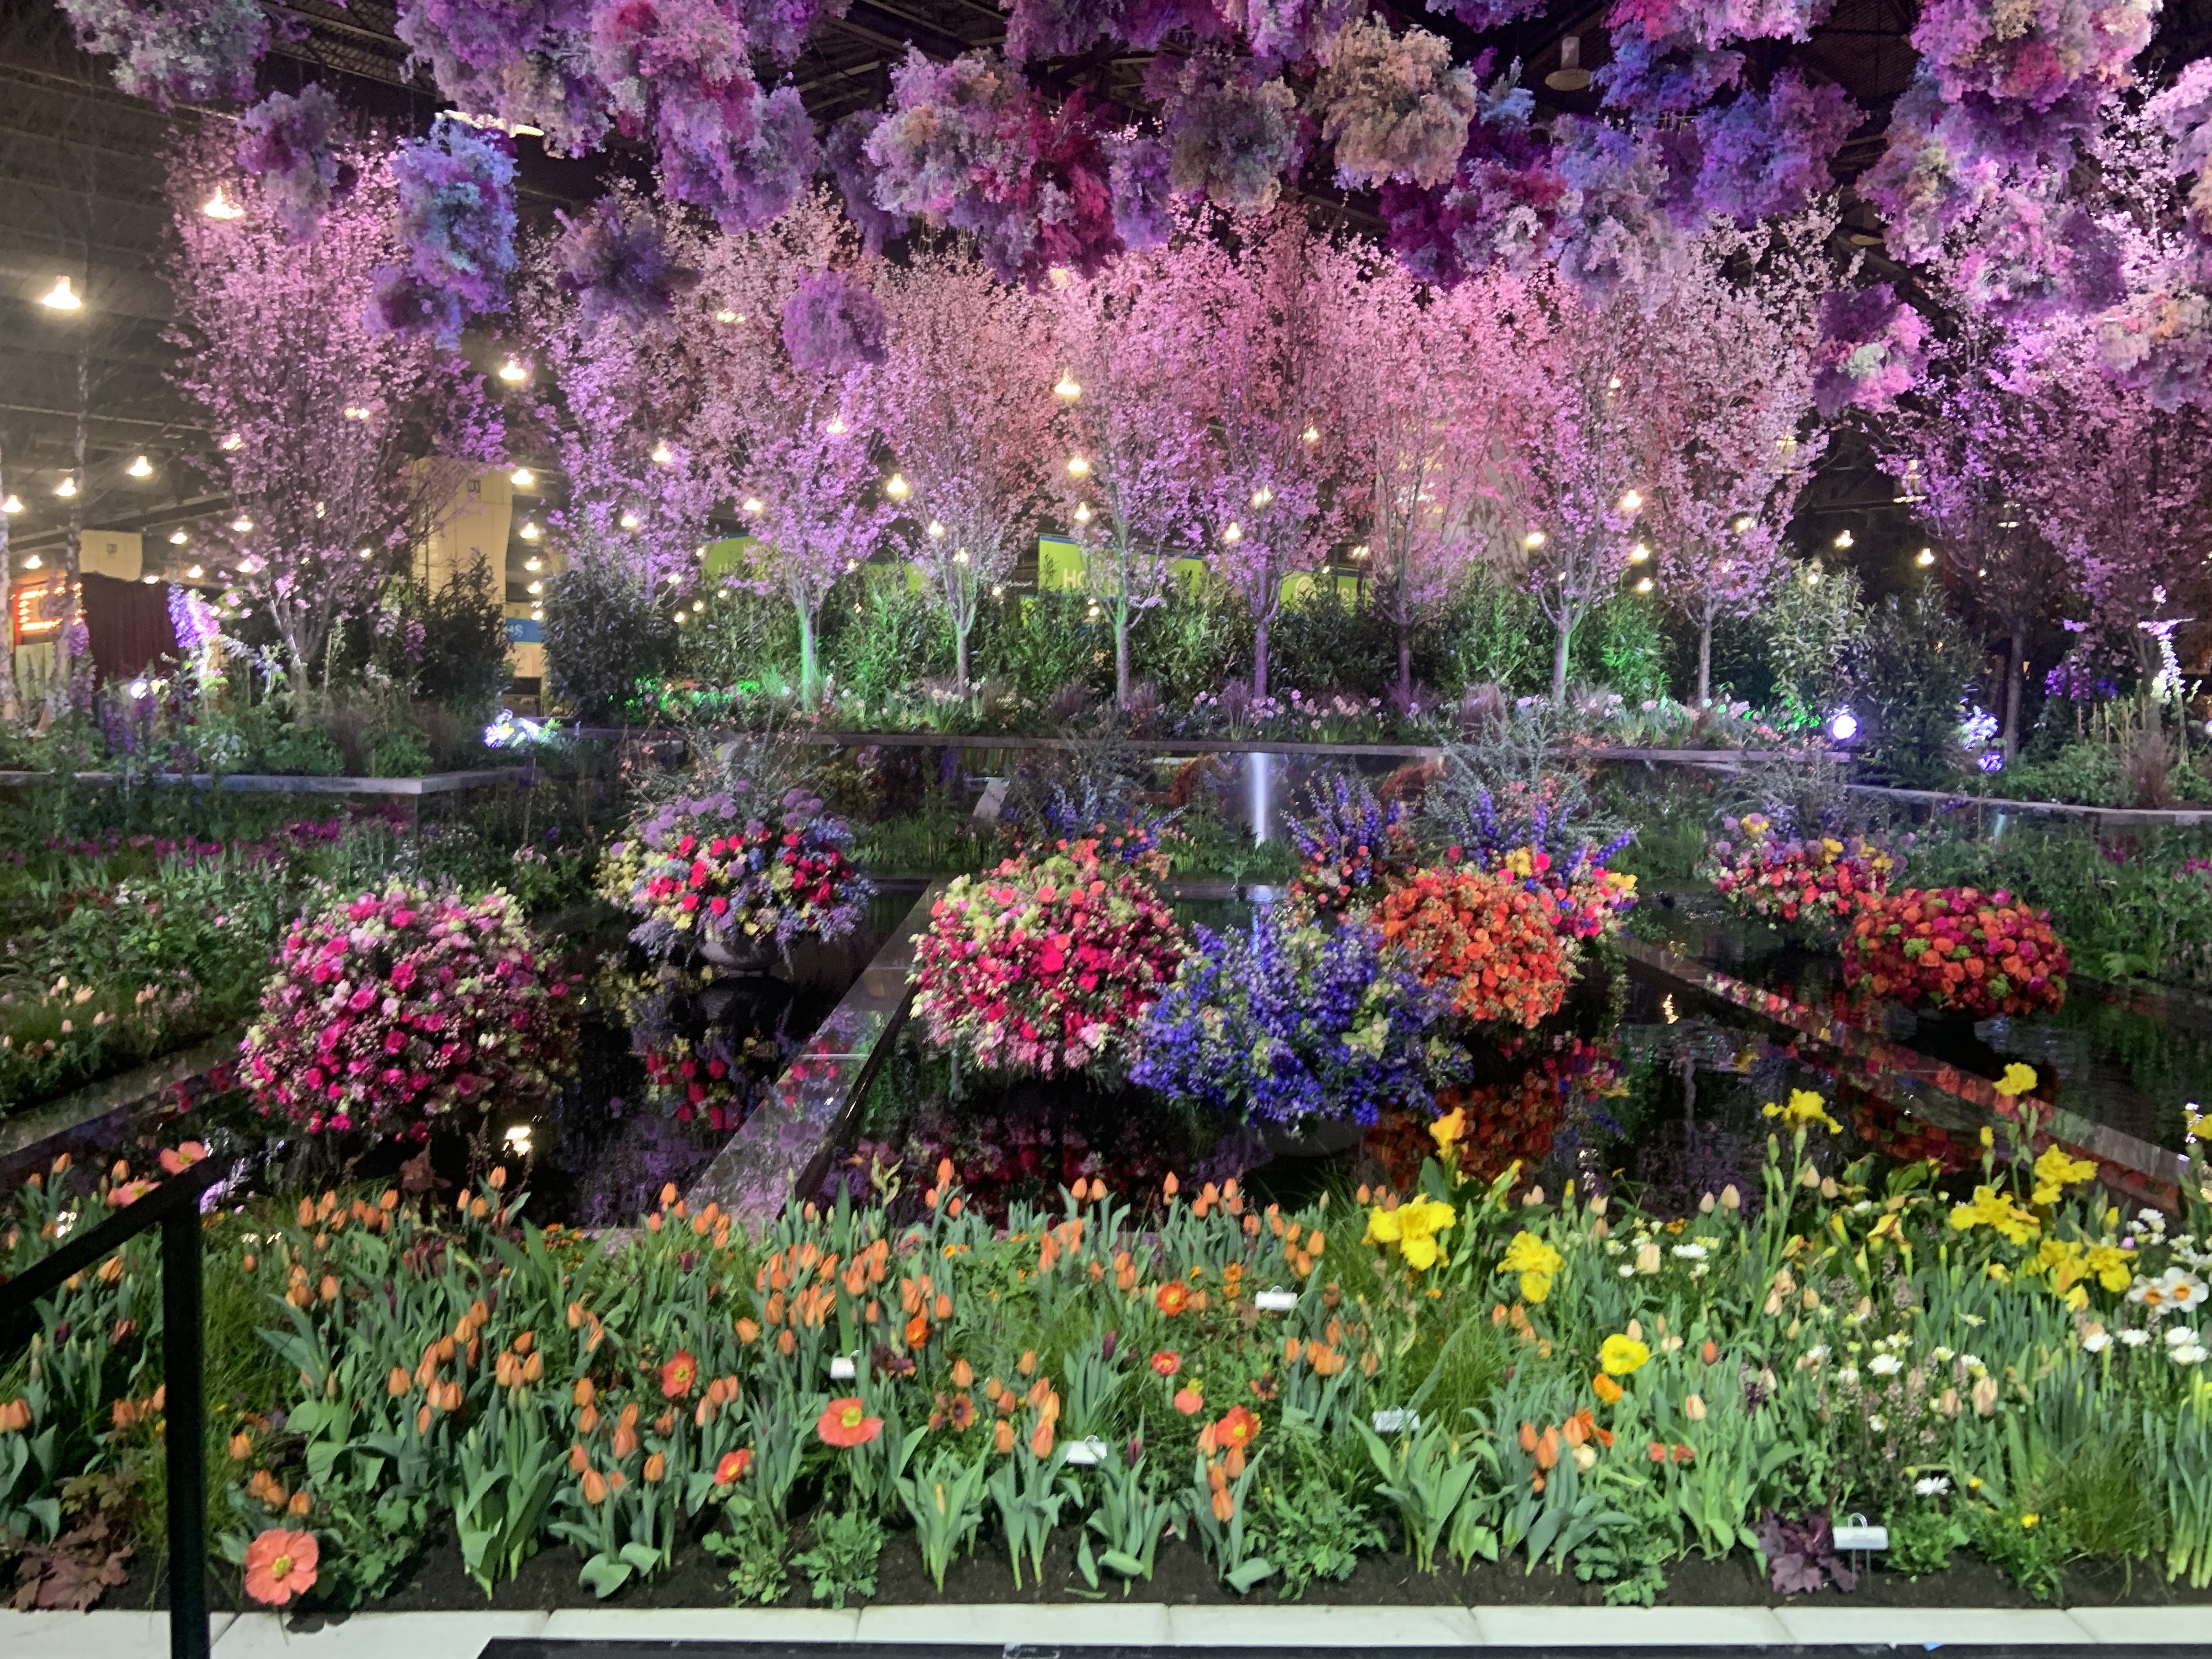 Philadelphia Flower Show returns for 195th year